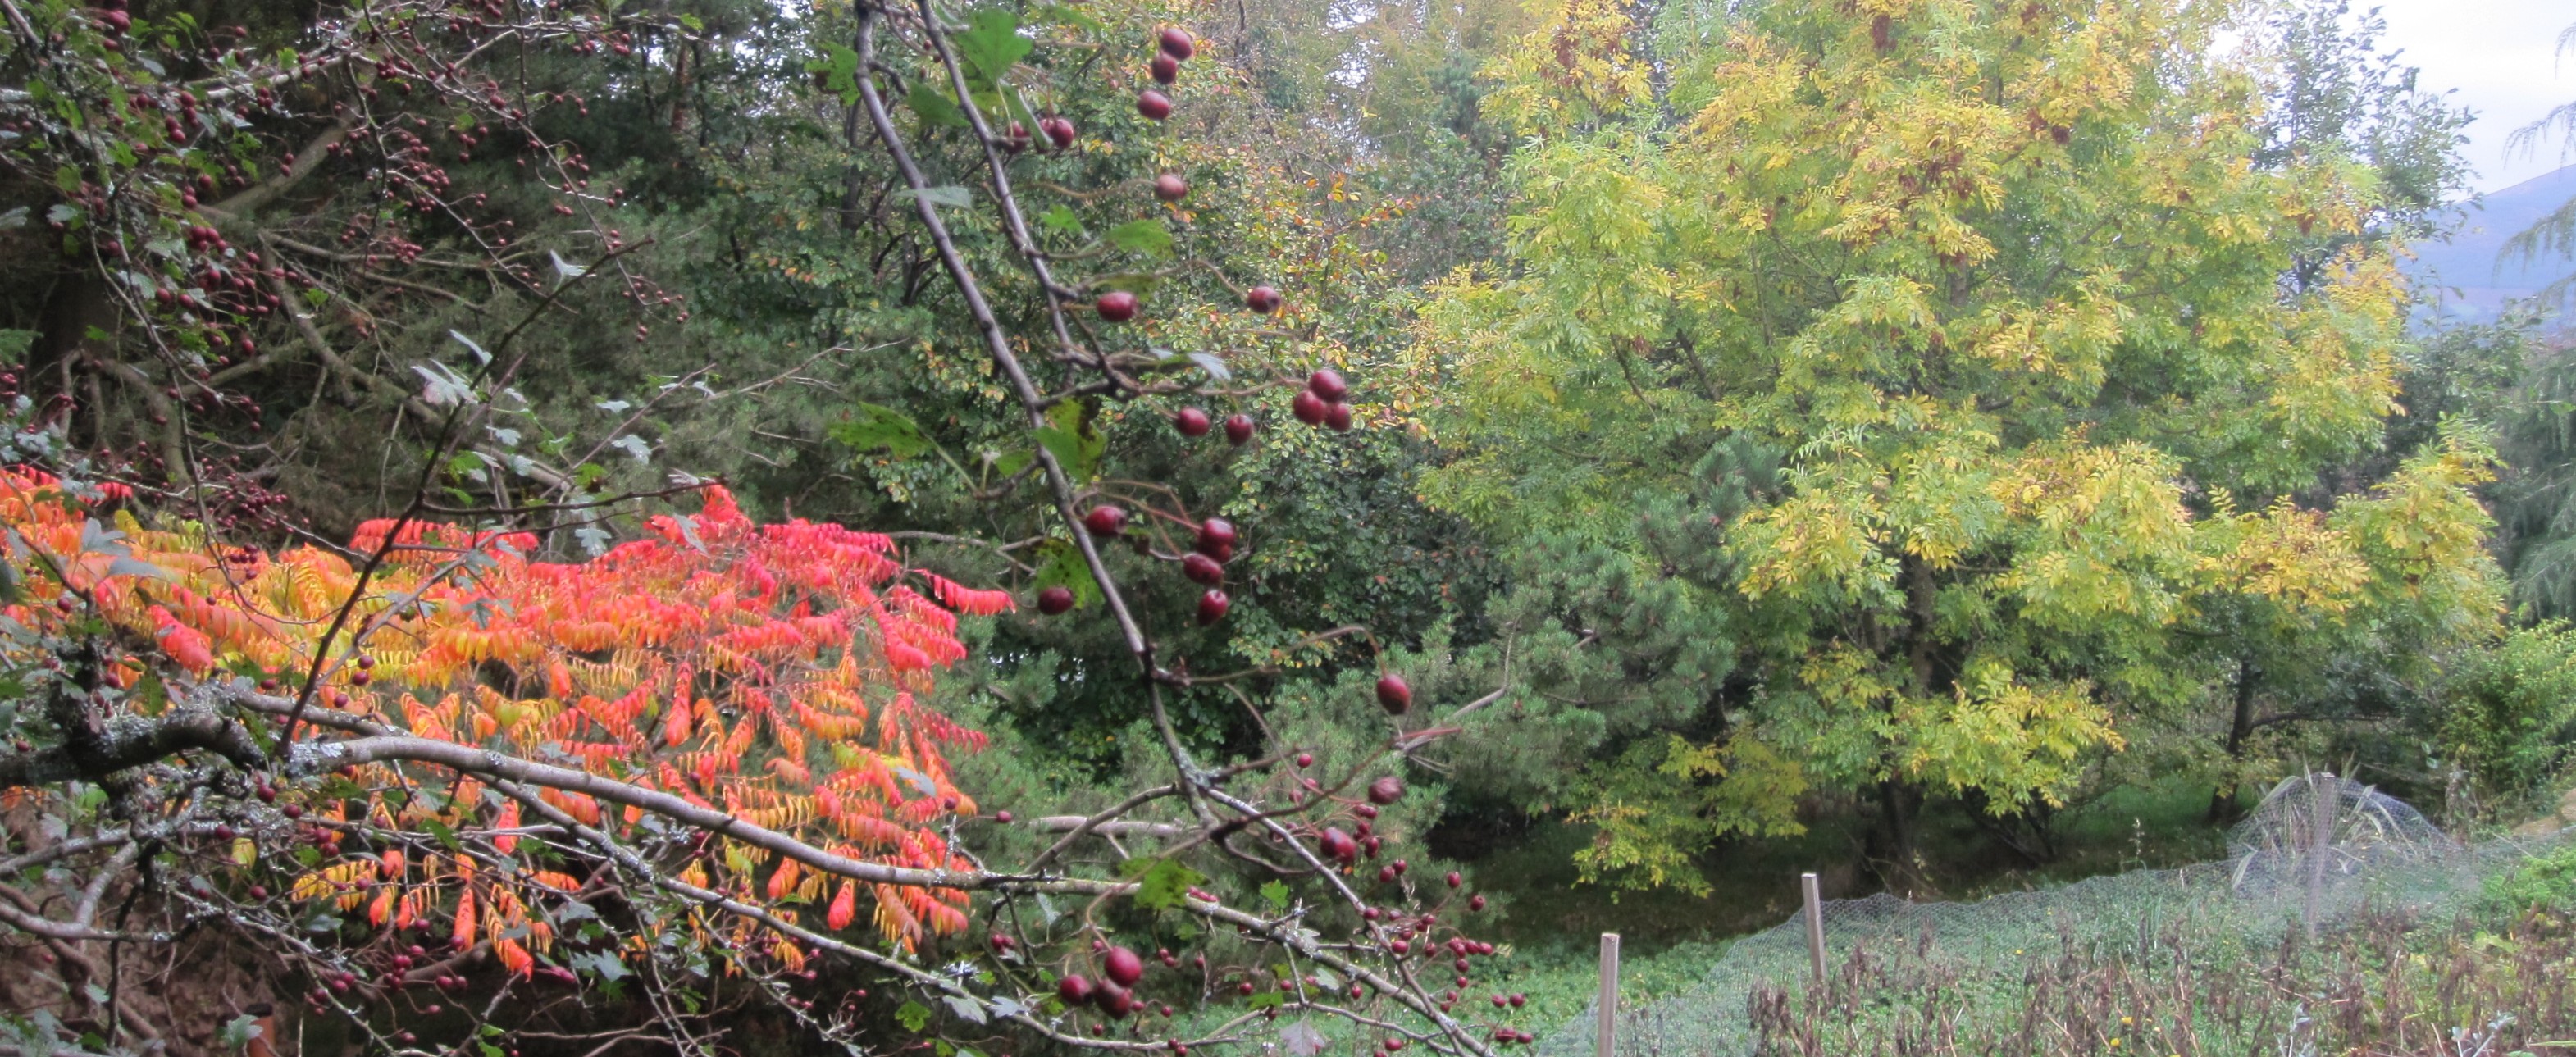 Autumn in Glen of Imaal